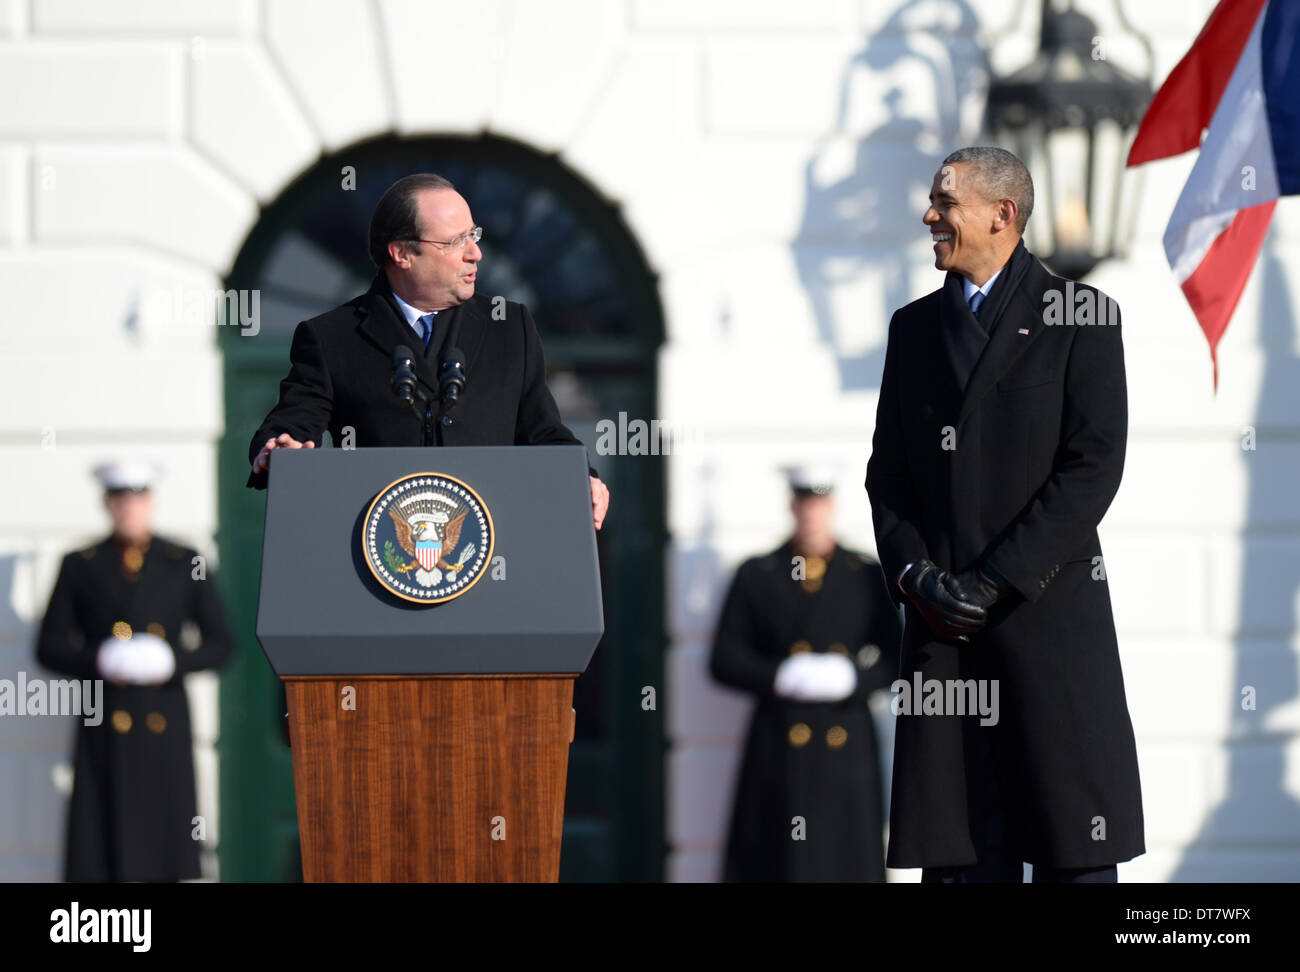 (140211) -- WASHINGTON, 11 febbraio, 2014 (Xinhua) -- STATI UNITI Il presidente Barack Obama (R) reagisce durante la visita del Presidente francese Francois Hollande parla durante una cerimonia di benvenuto sul prato Sud della Casa Bianca a Washington DC, capitale degli Stati Uniti, Fed. 11, 2014. Barack Obama il martedì ha accolto con favore il suo omologo francese Francois Hollande alla Casa Bianca con fanfare e caldo elogio di legami bilaterali. Il leader francese è stato salutato con tromba fanfare e un 21-gun salute su un soleggiato e fredda mattina, per la sua visita di Stato negli Stati Uniti, la prima di un capo di Stato francese di sinc Foto Stock